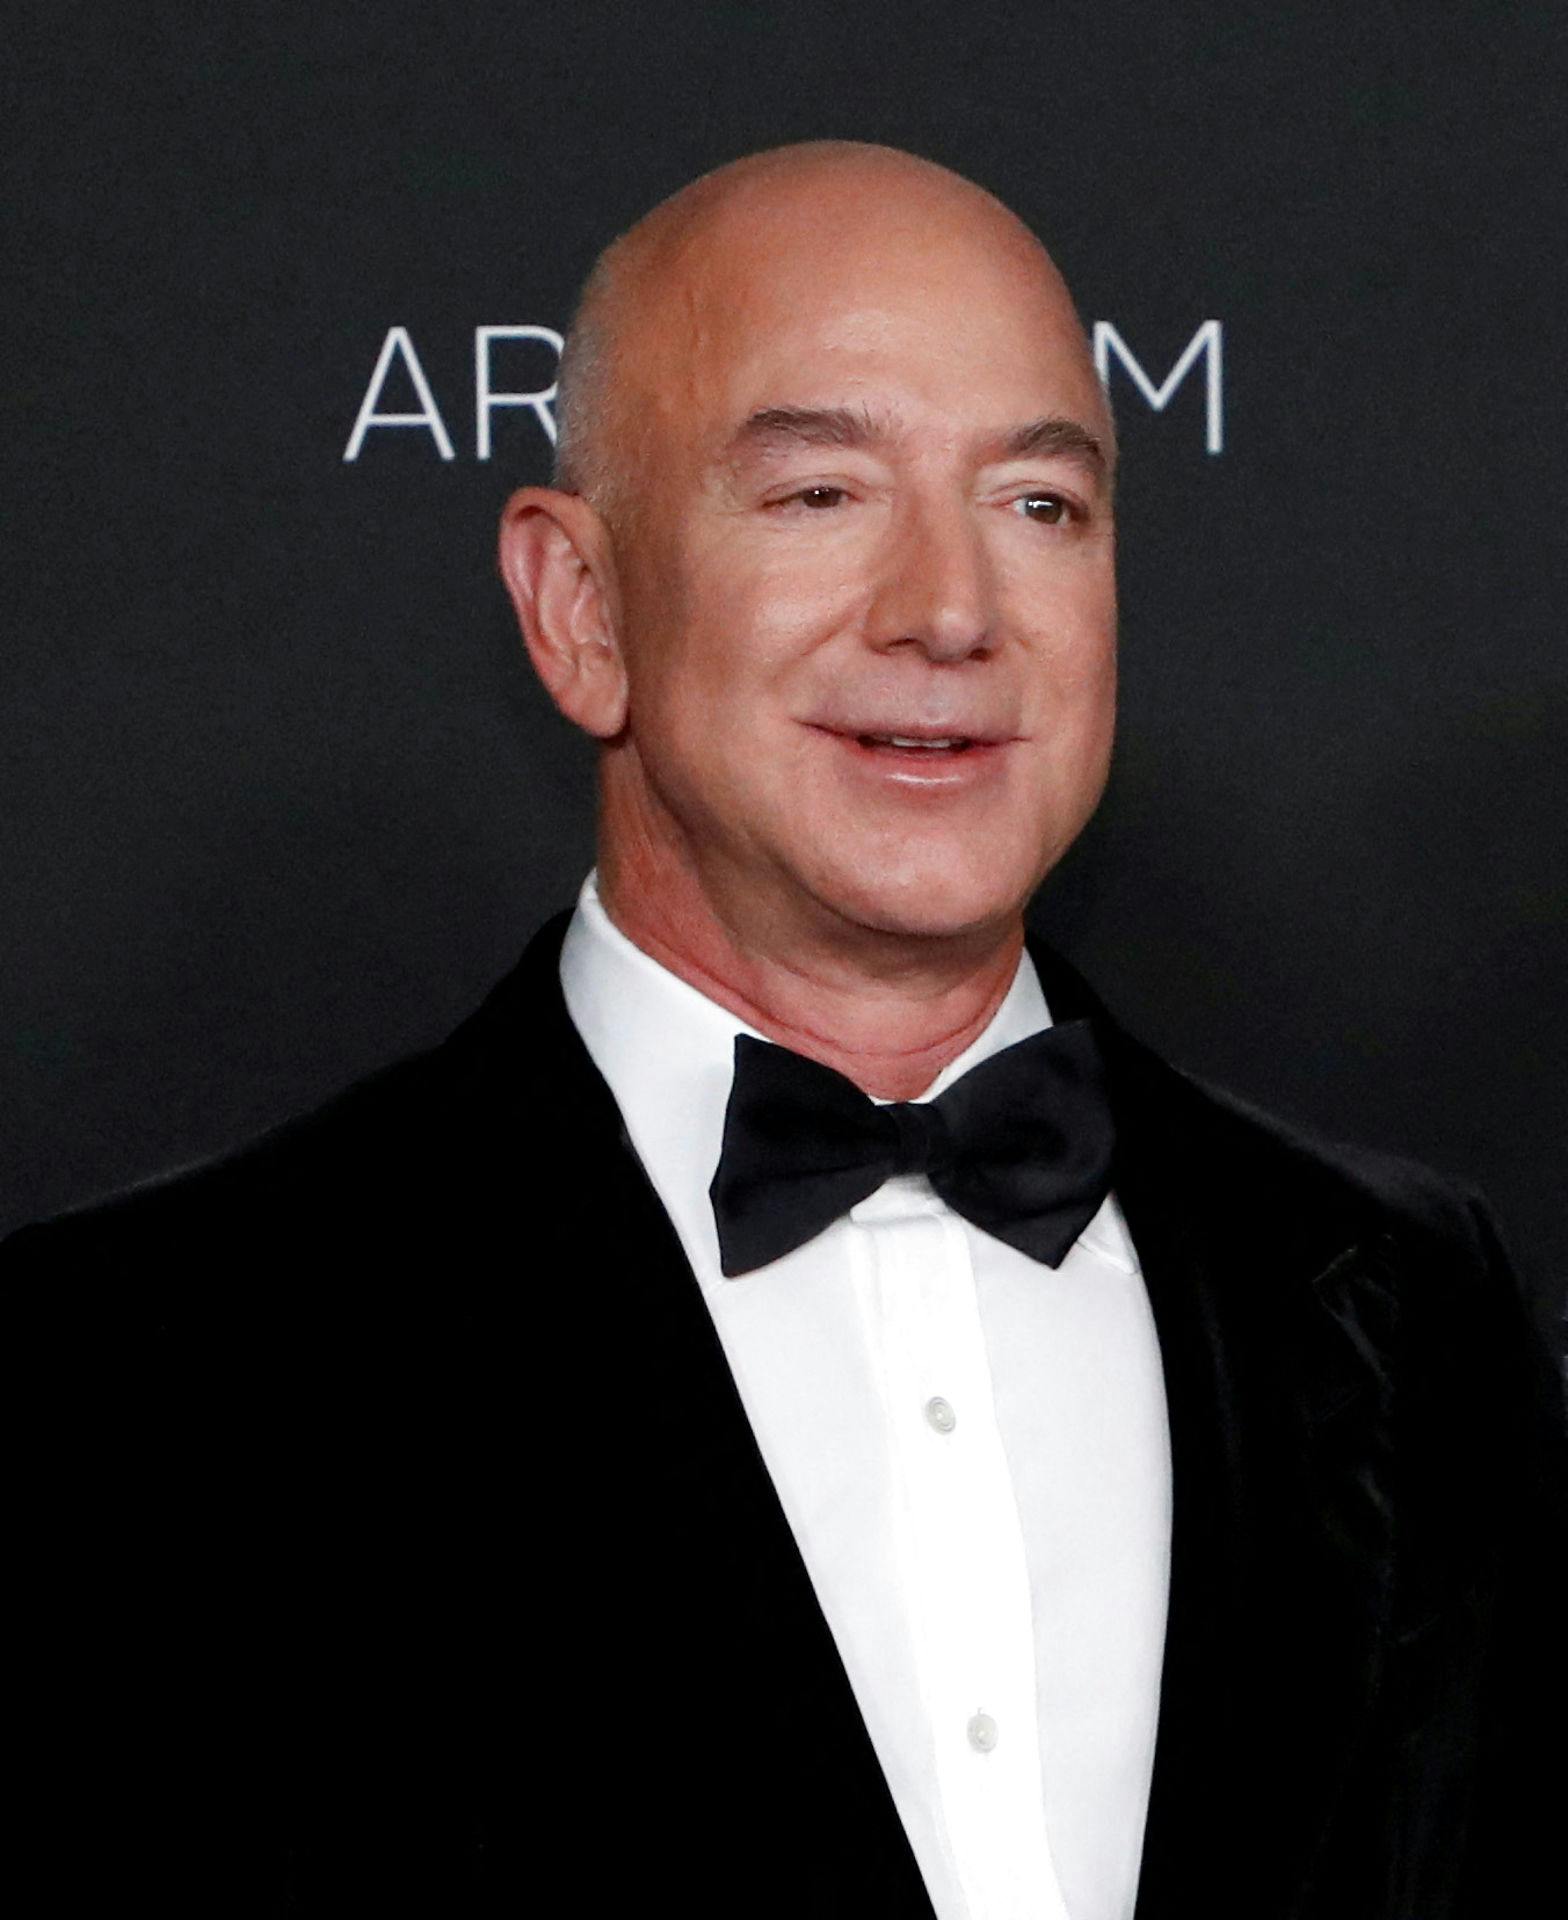 Jeff Bezos, grundlæggeren af Amazon og en af verdens rigeste mænd.
